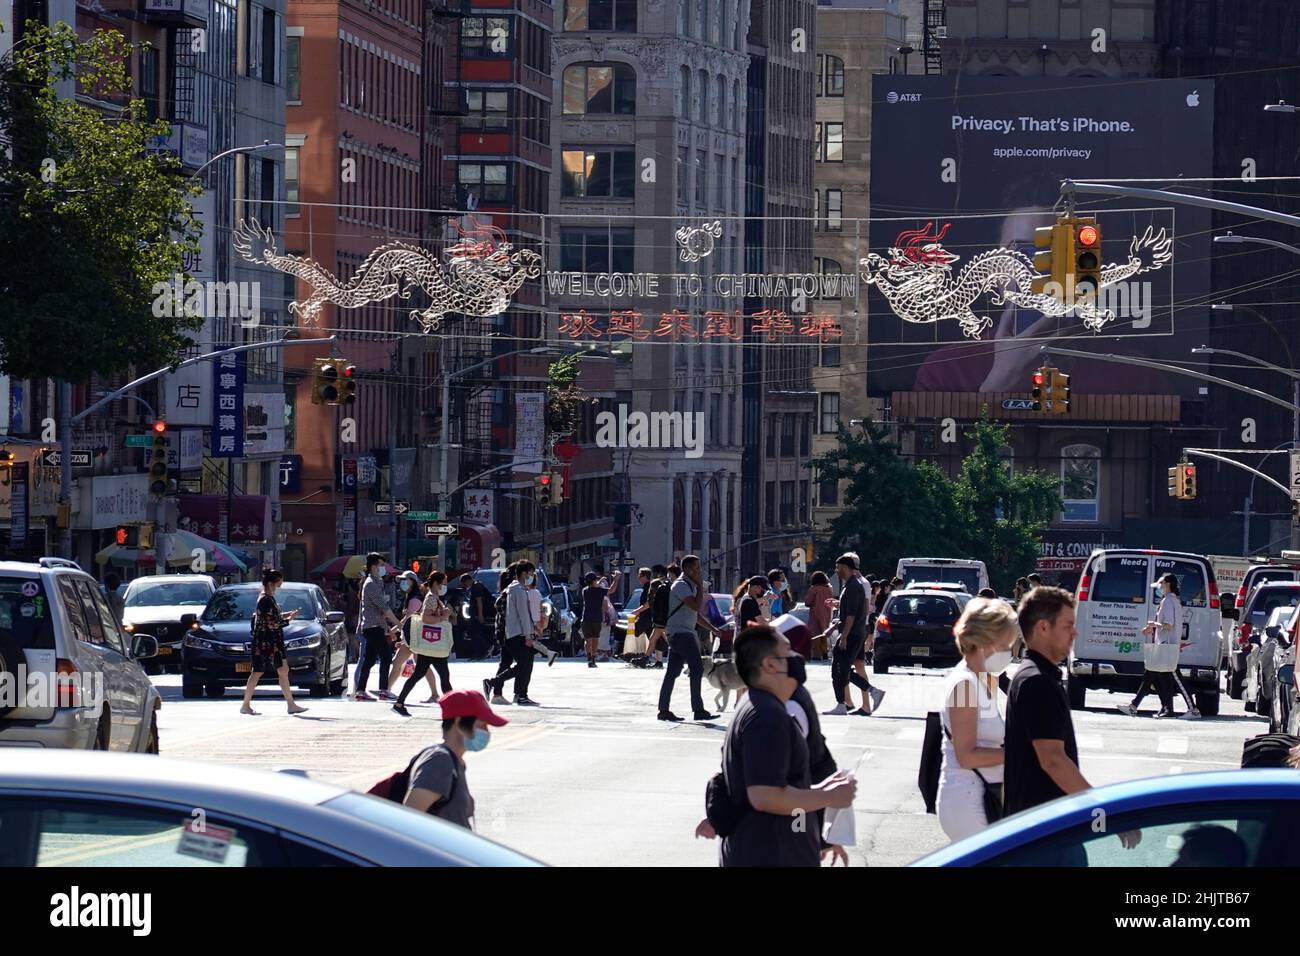 Chinatown area of Manhattan New York City Stock Photo